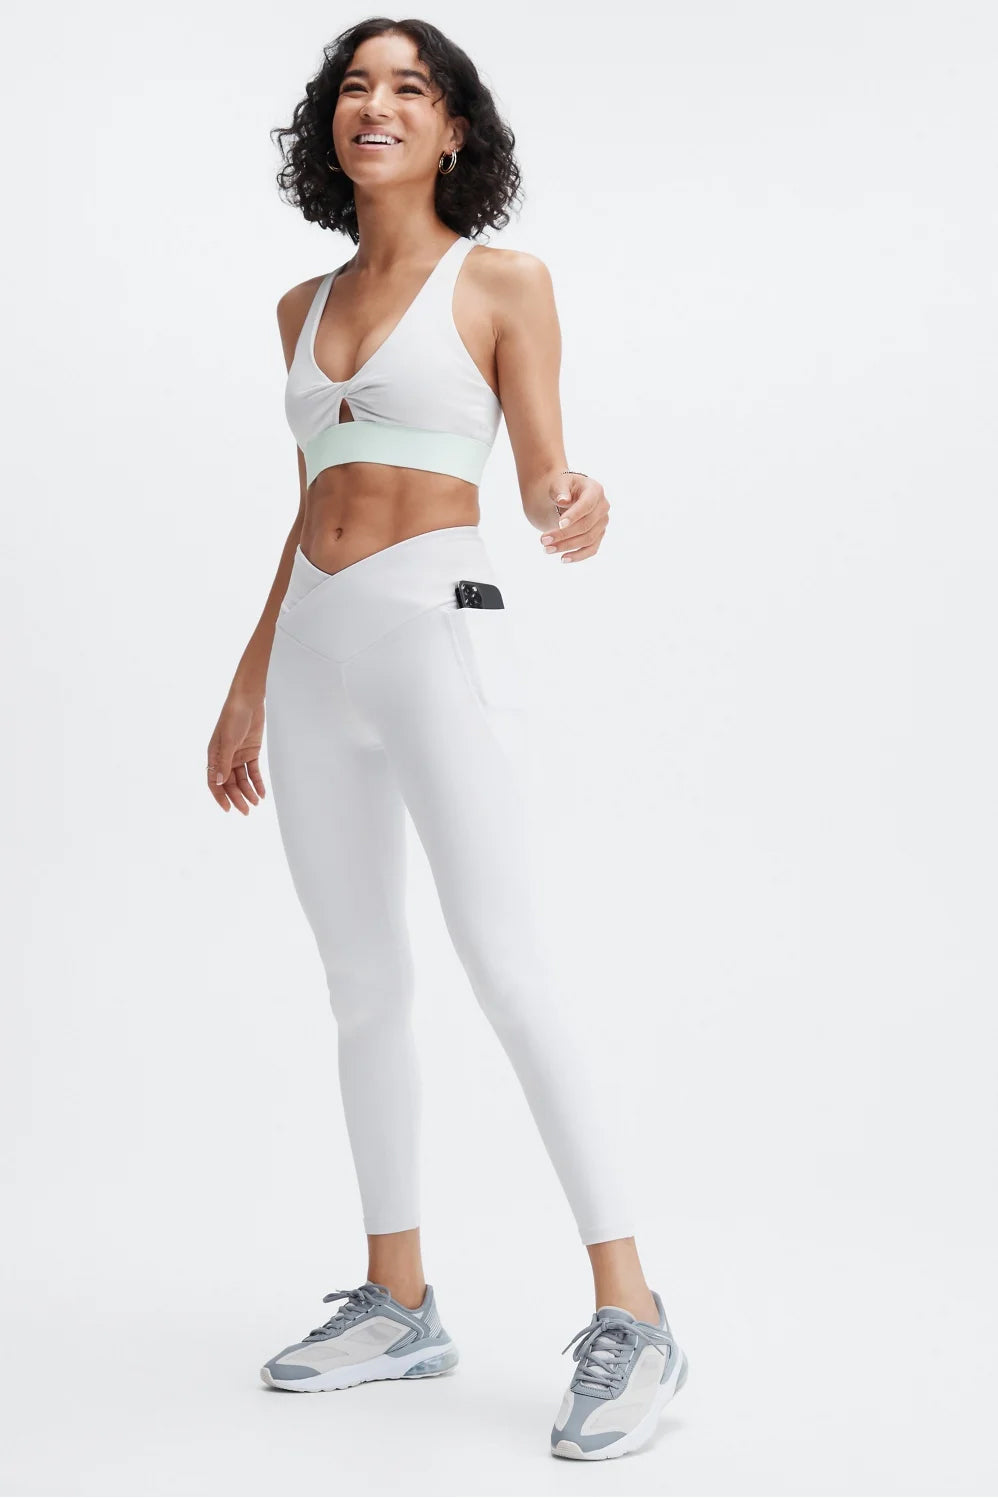 White crossover leggings for women